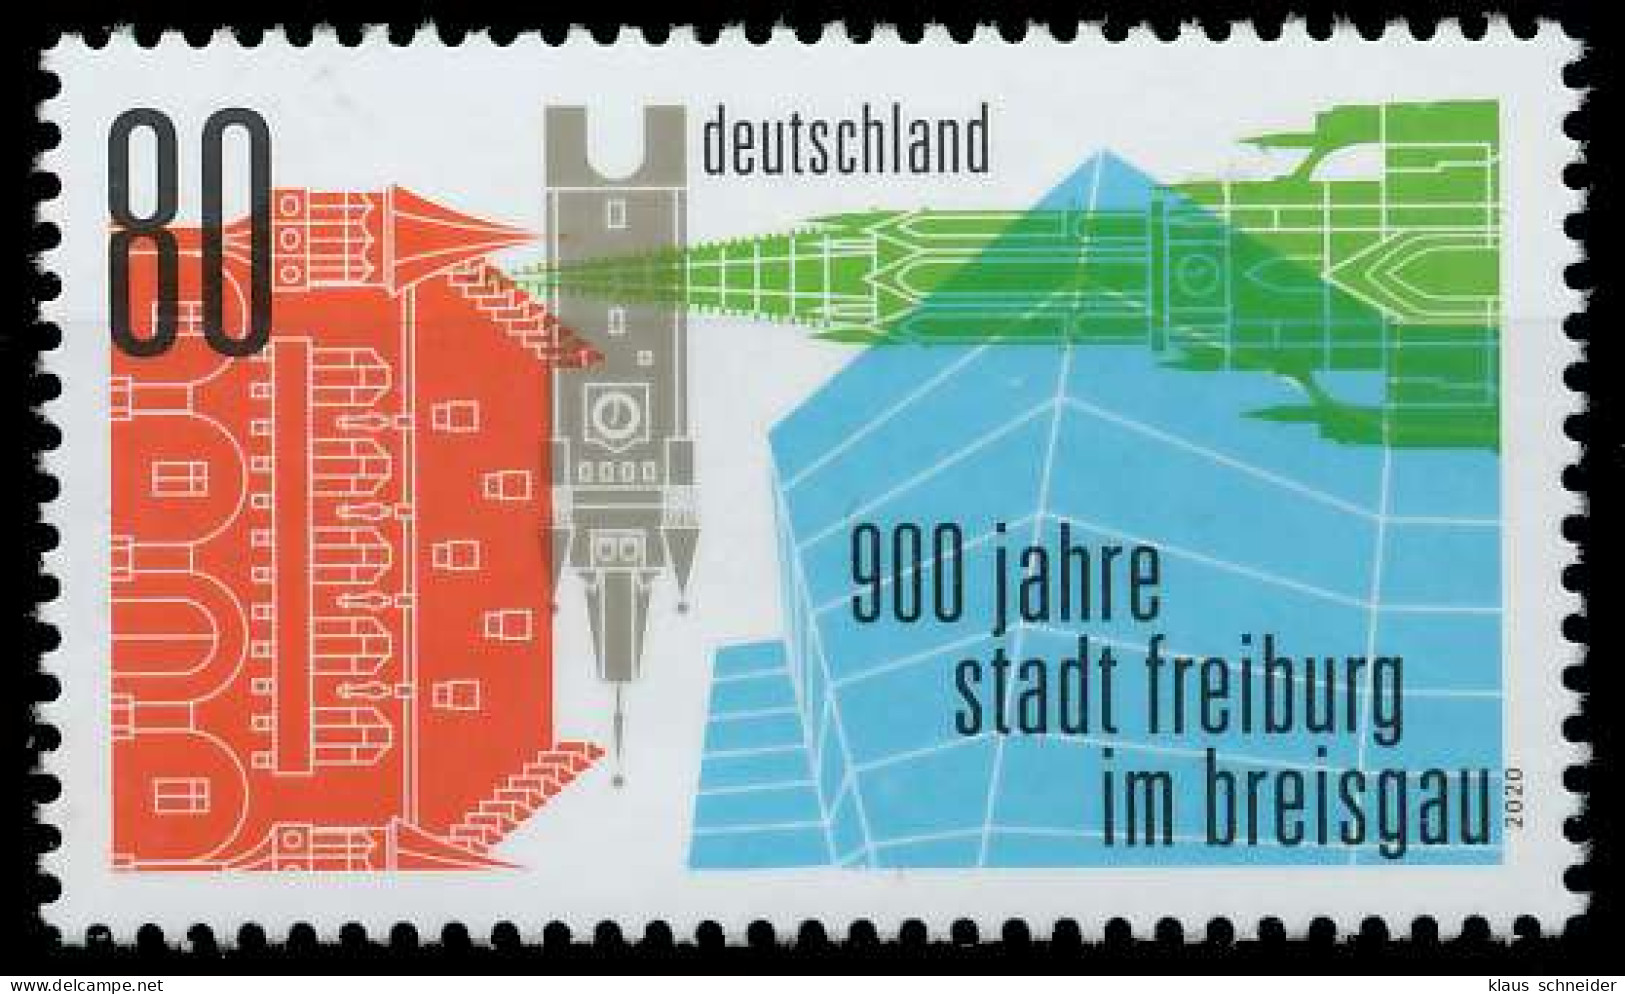 BRD BUND 2020 Nr 3553 Postfrisch SED35DE - Unused Stamps